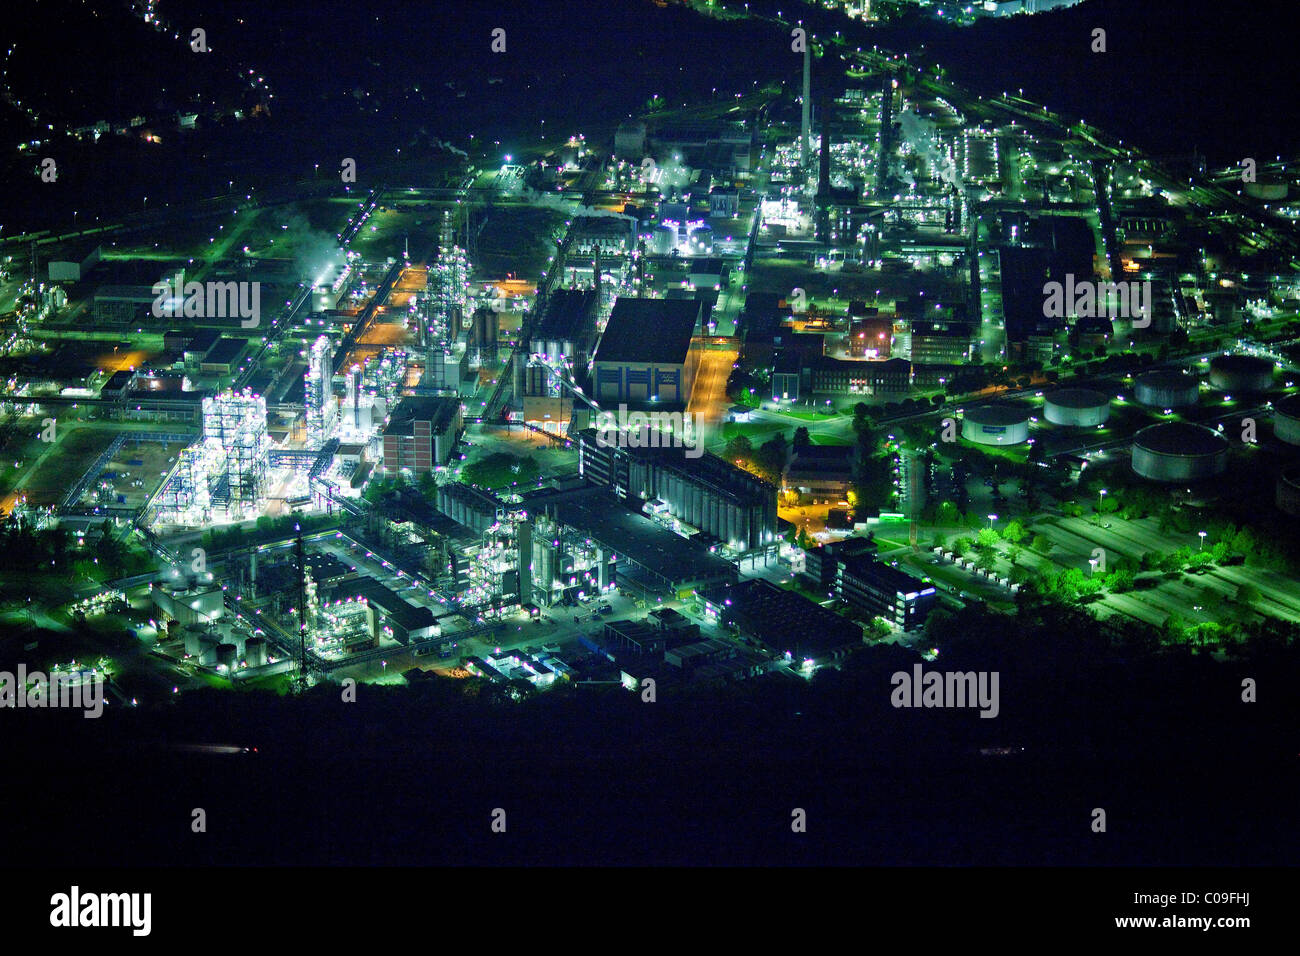 Vue aérienne, photo de nuit, raffineries, Aral, BP, Gelsenkirchen, région de la Ruhr, Nordrhein-Westfalen, Germany, Europe Banque D'Images